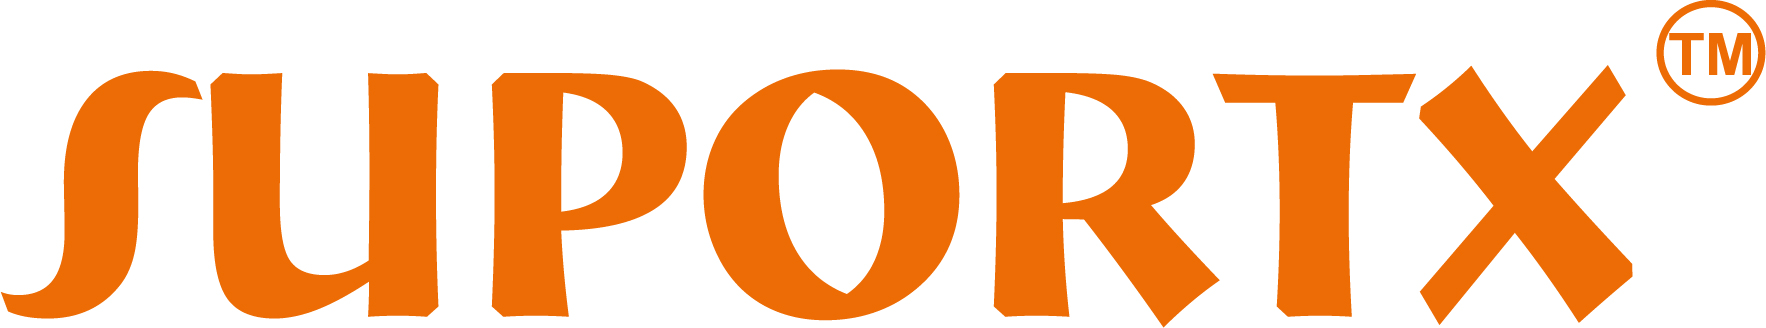 Suportx Orange Logo JPEG 2022 (1)